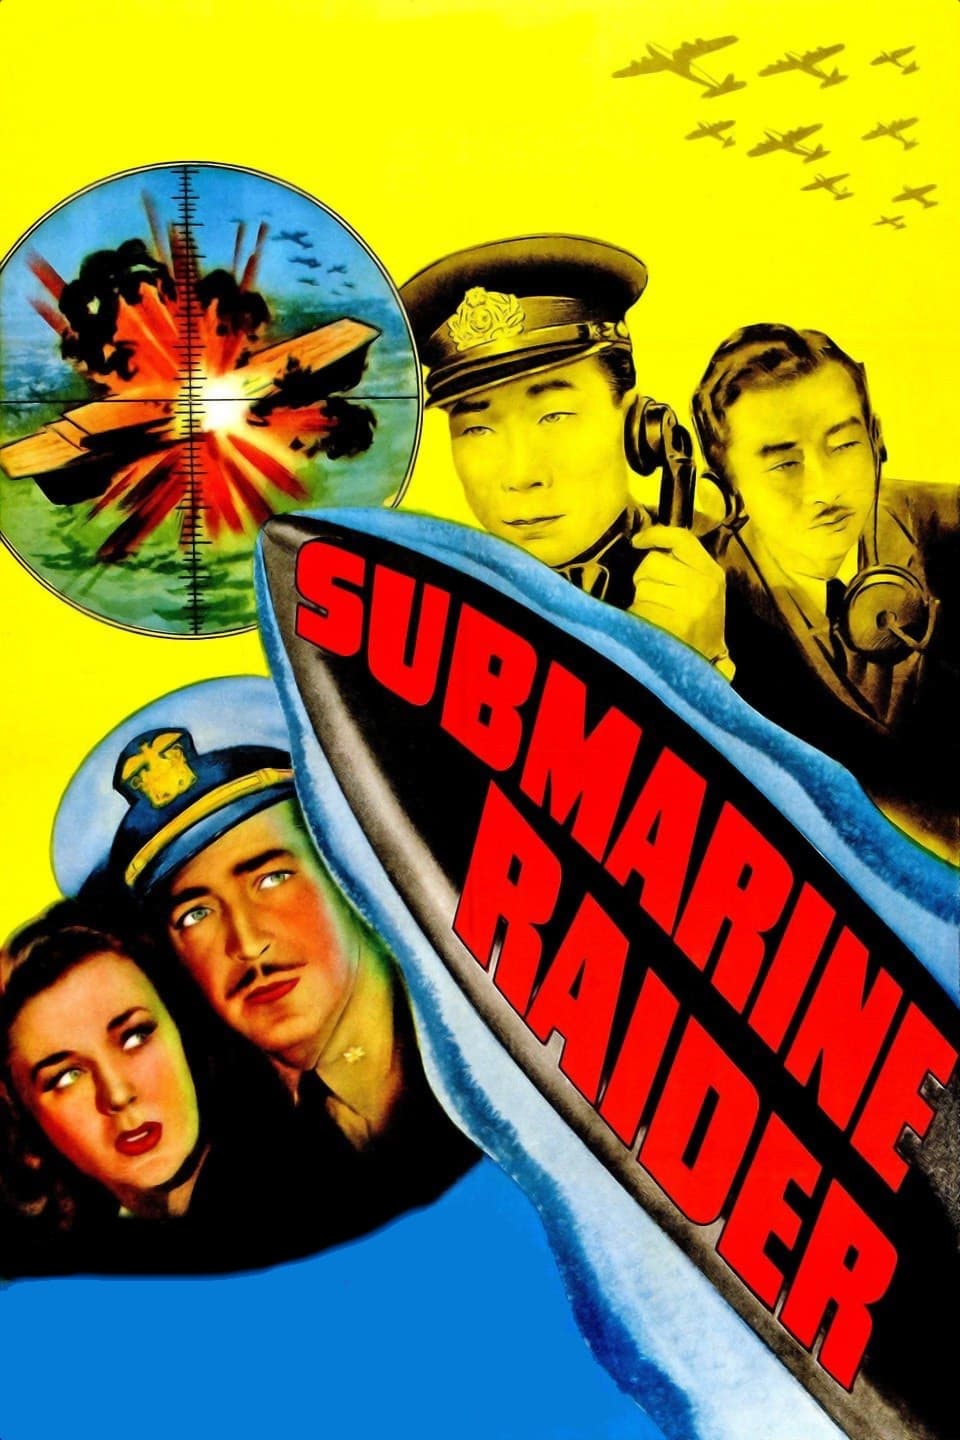 Submarine Raider (1942)